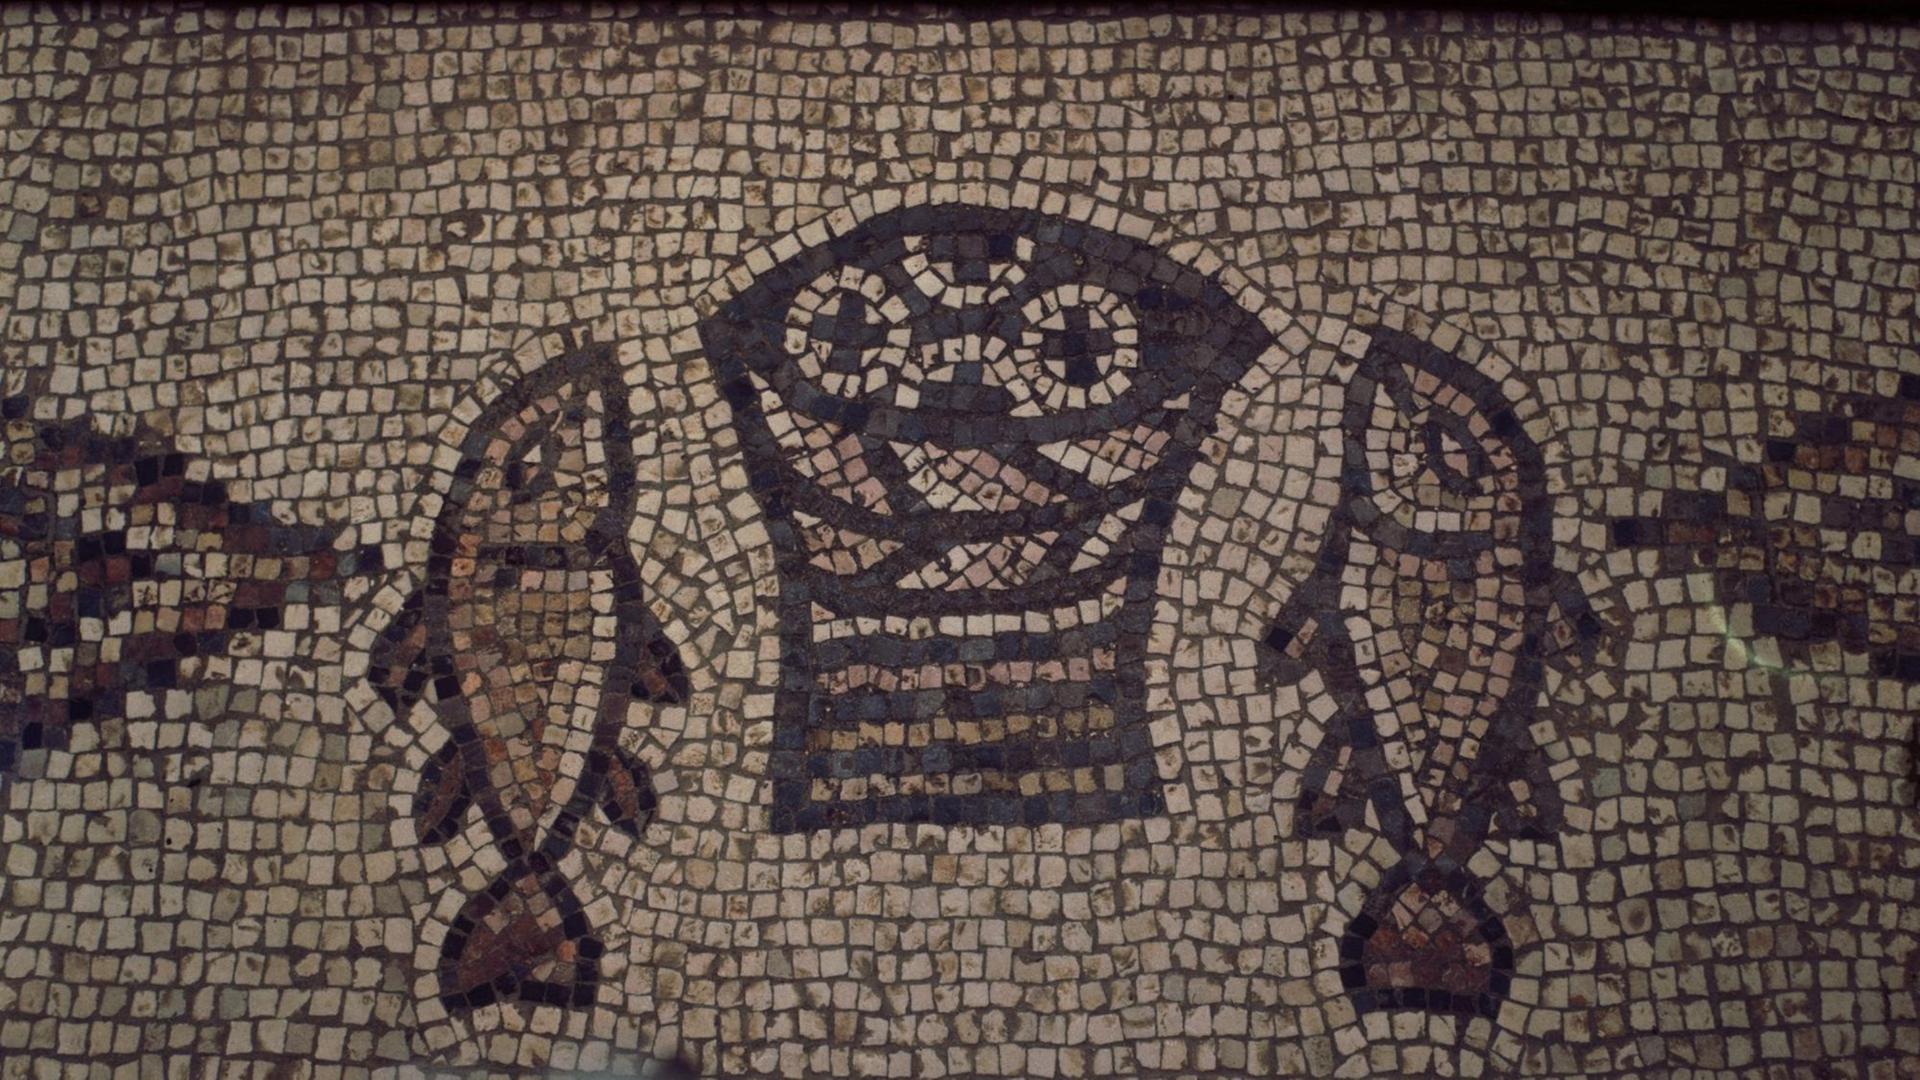 eltbekanntes Mosaik in der Brotvermehrungskirche am See Genezareth in Israel